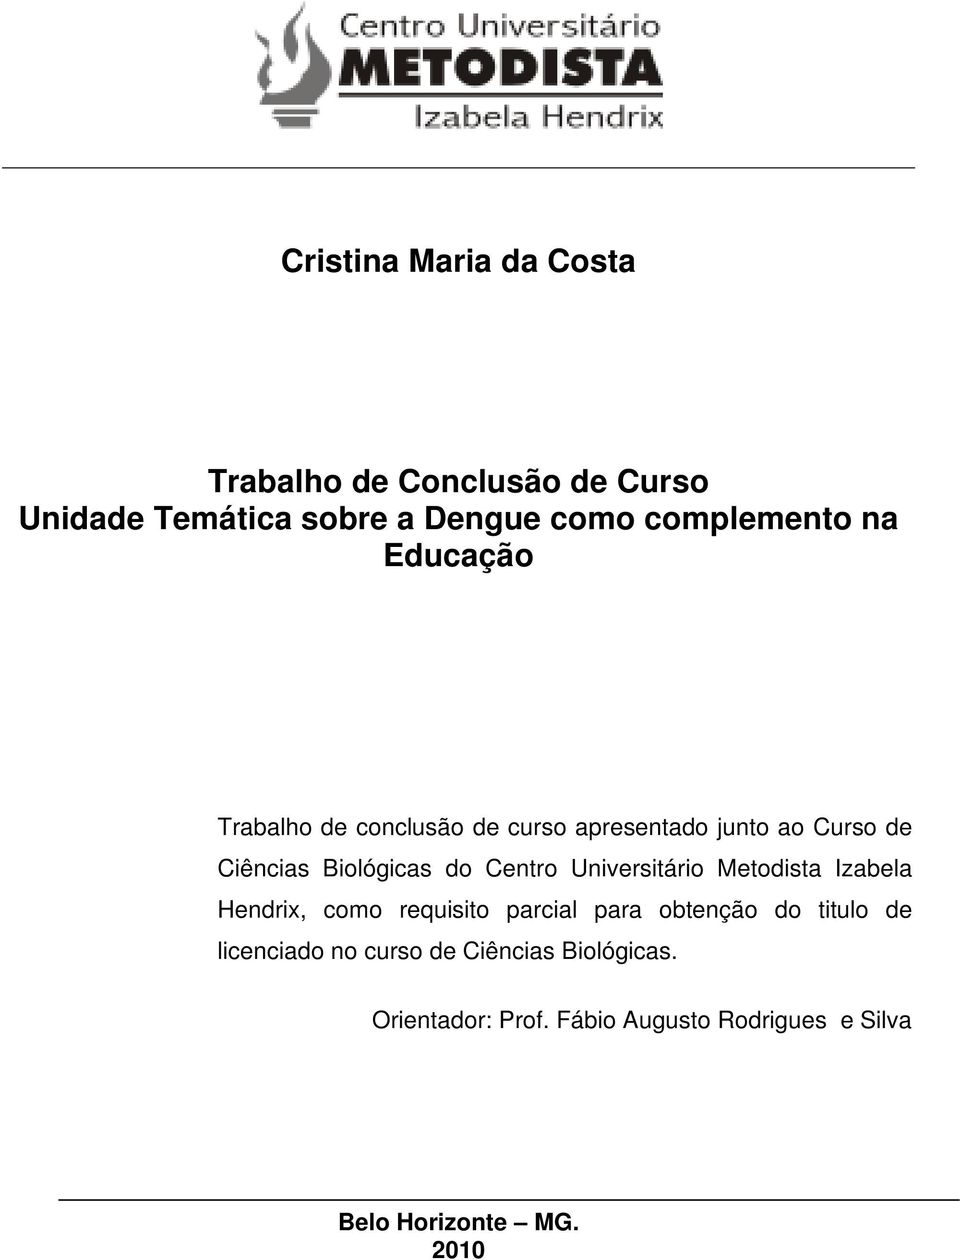 Universitário Metodista Izabela Hendrix, como requisito parcial para obtenção do titulo de licenciado